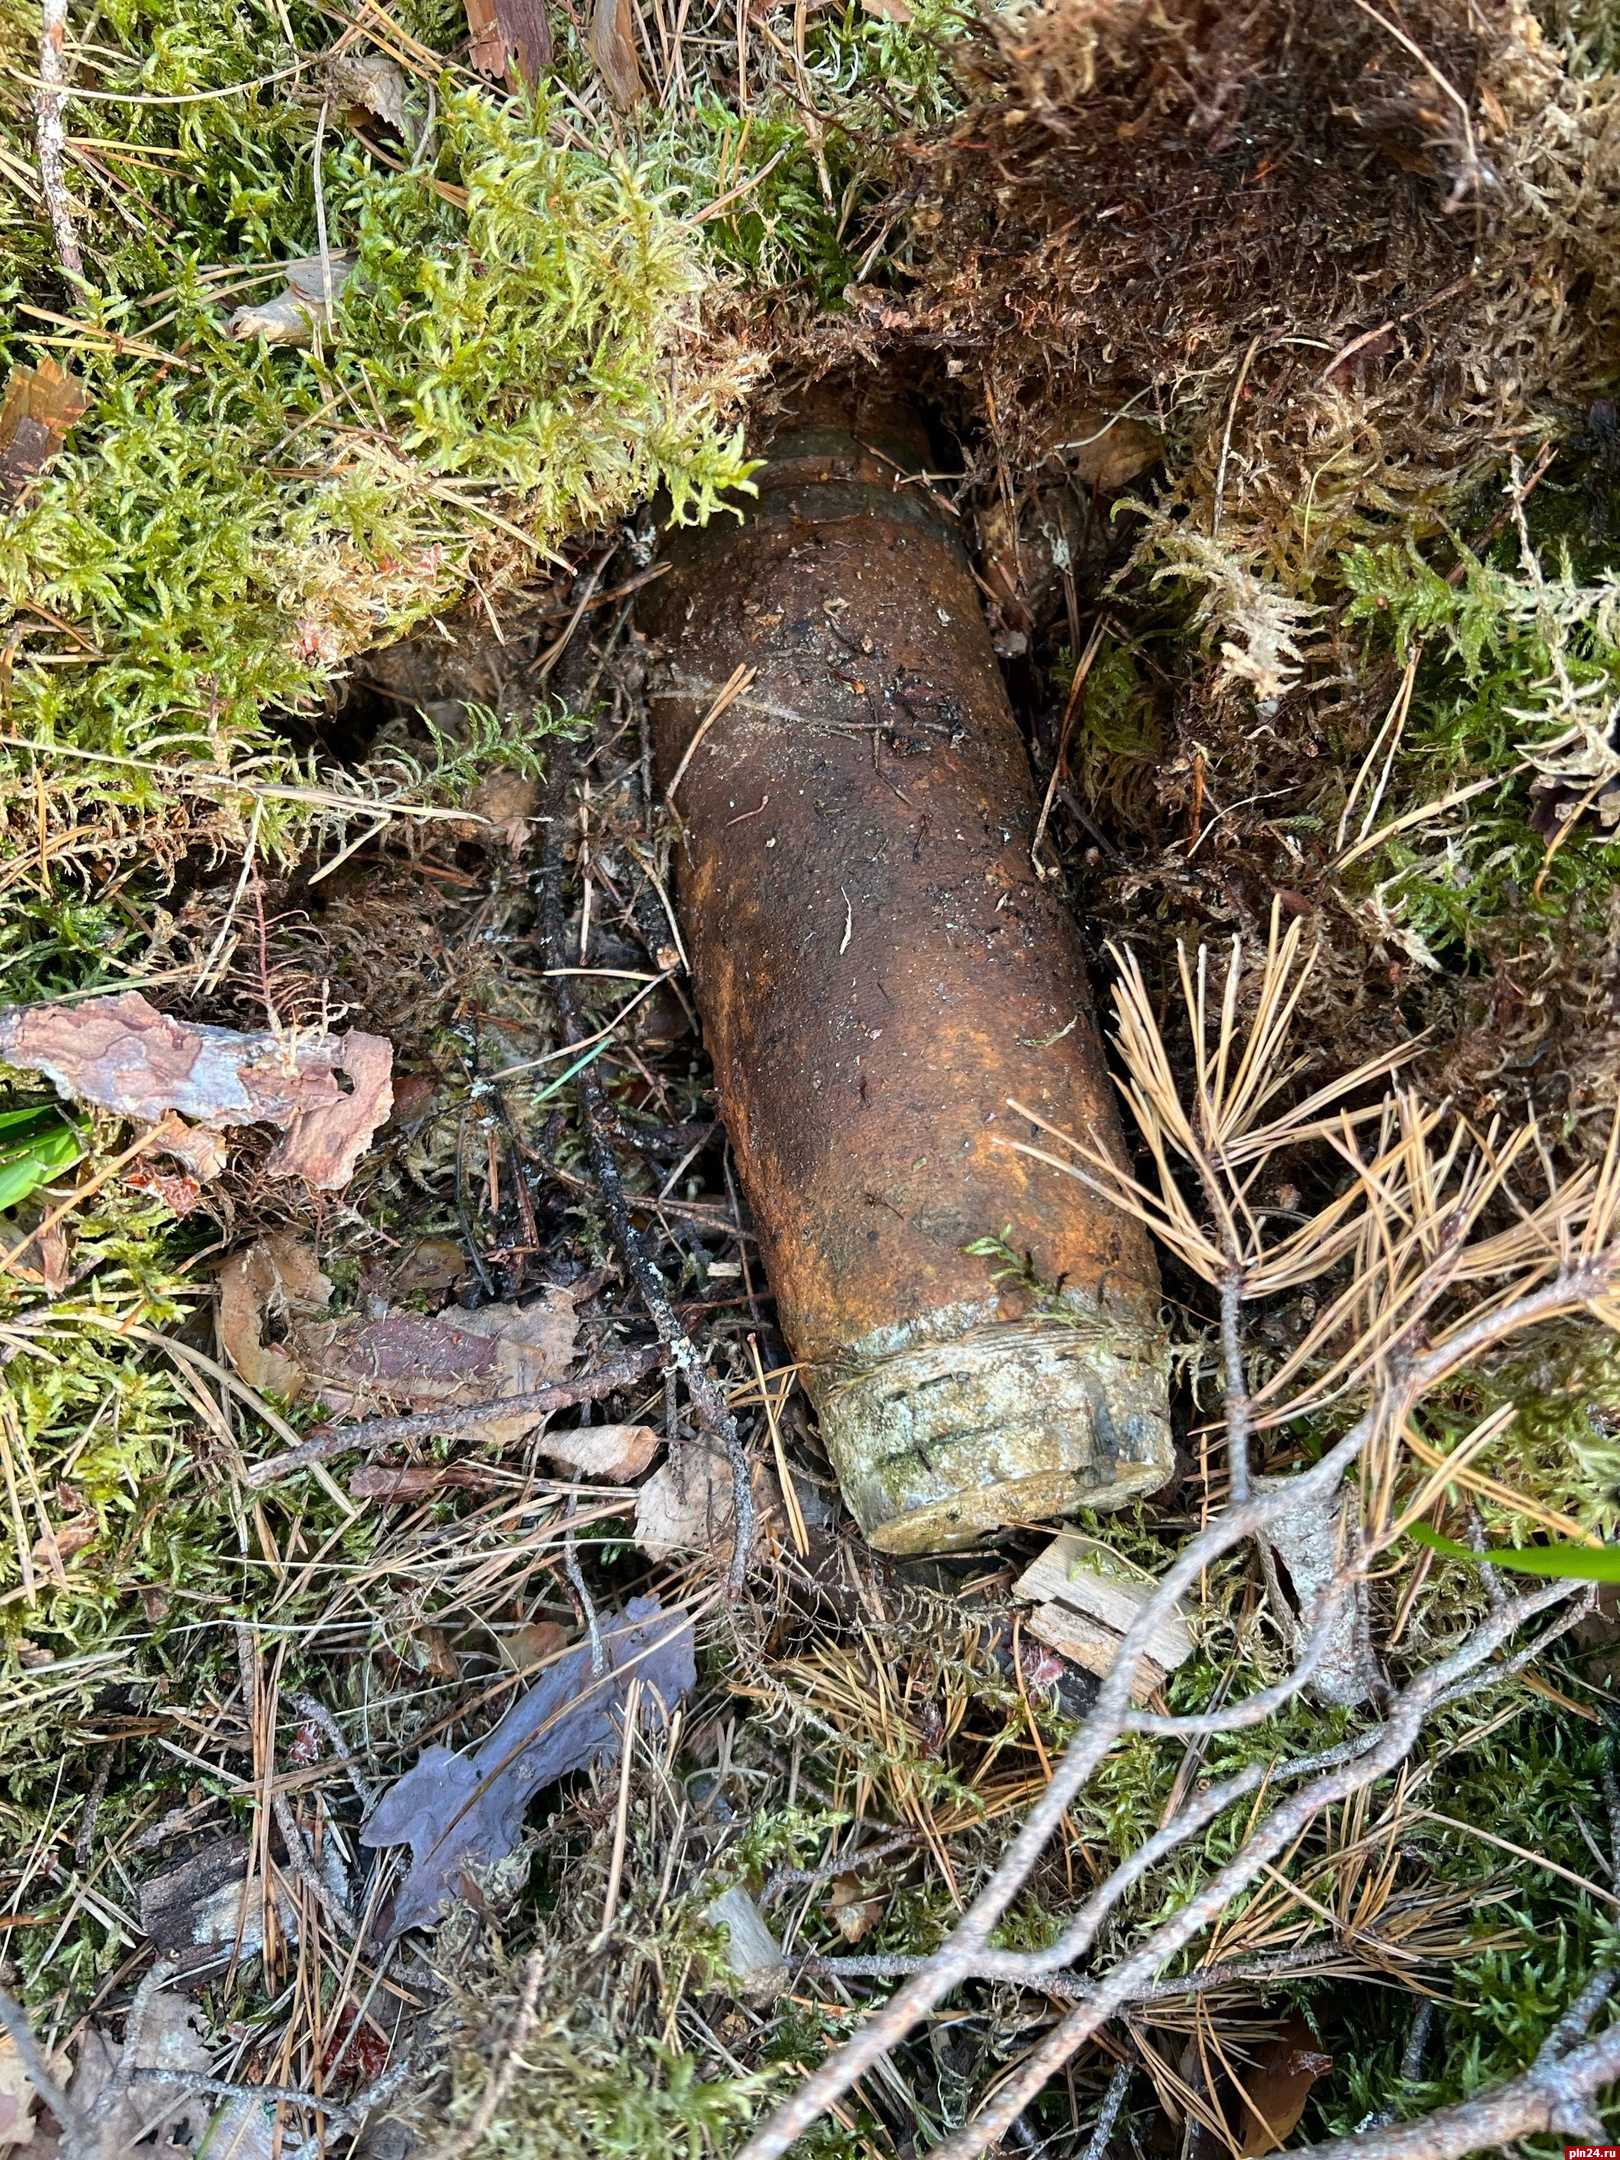 Похожий на снаряд предмет нашли ягодники в лесу по направлению к Гдову